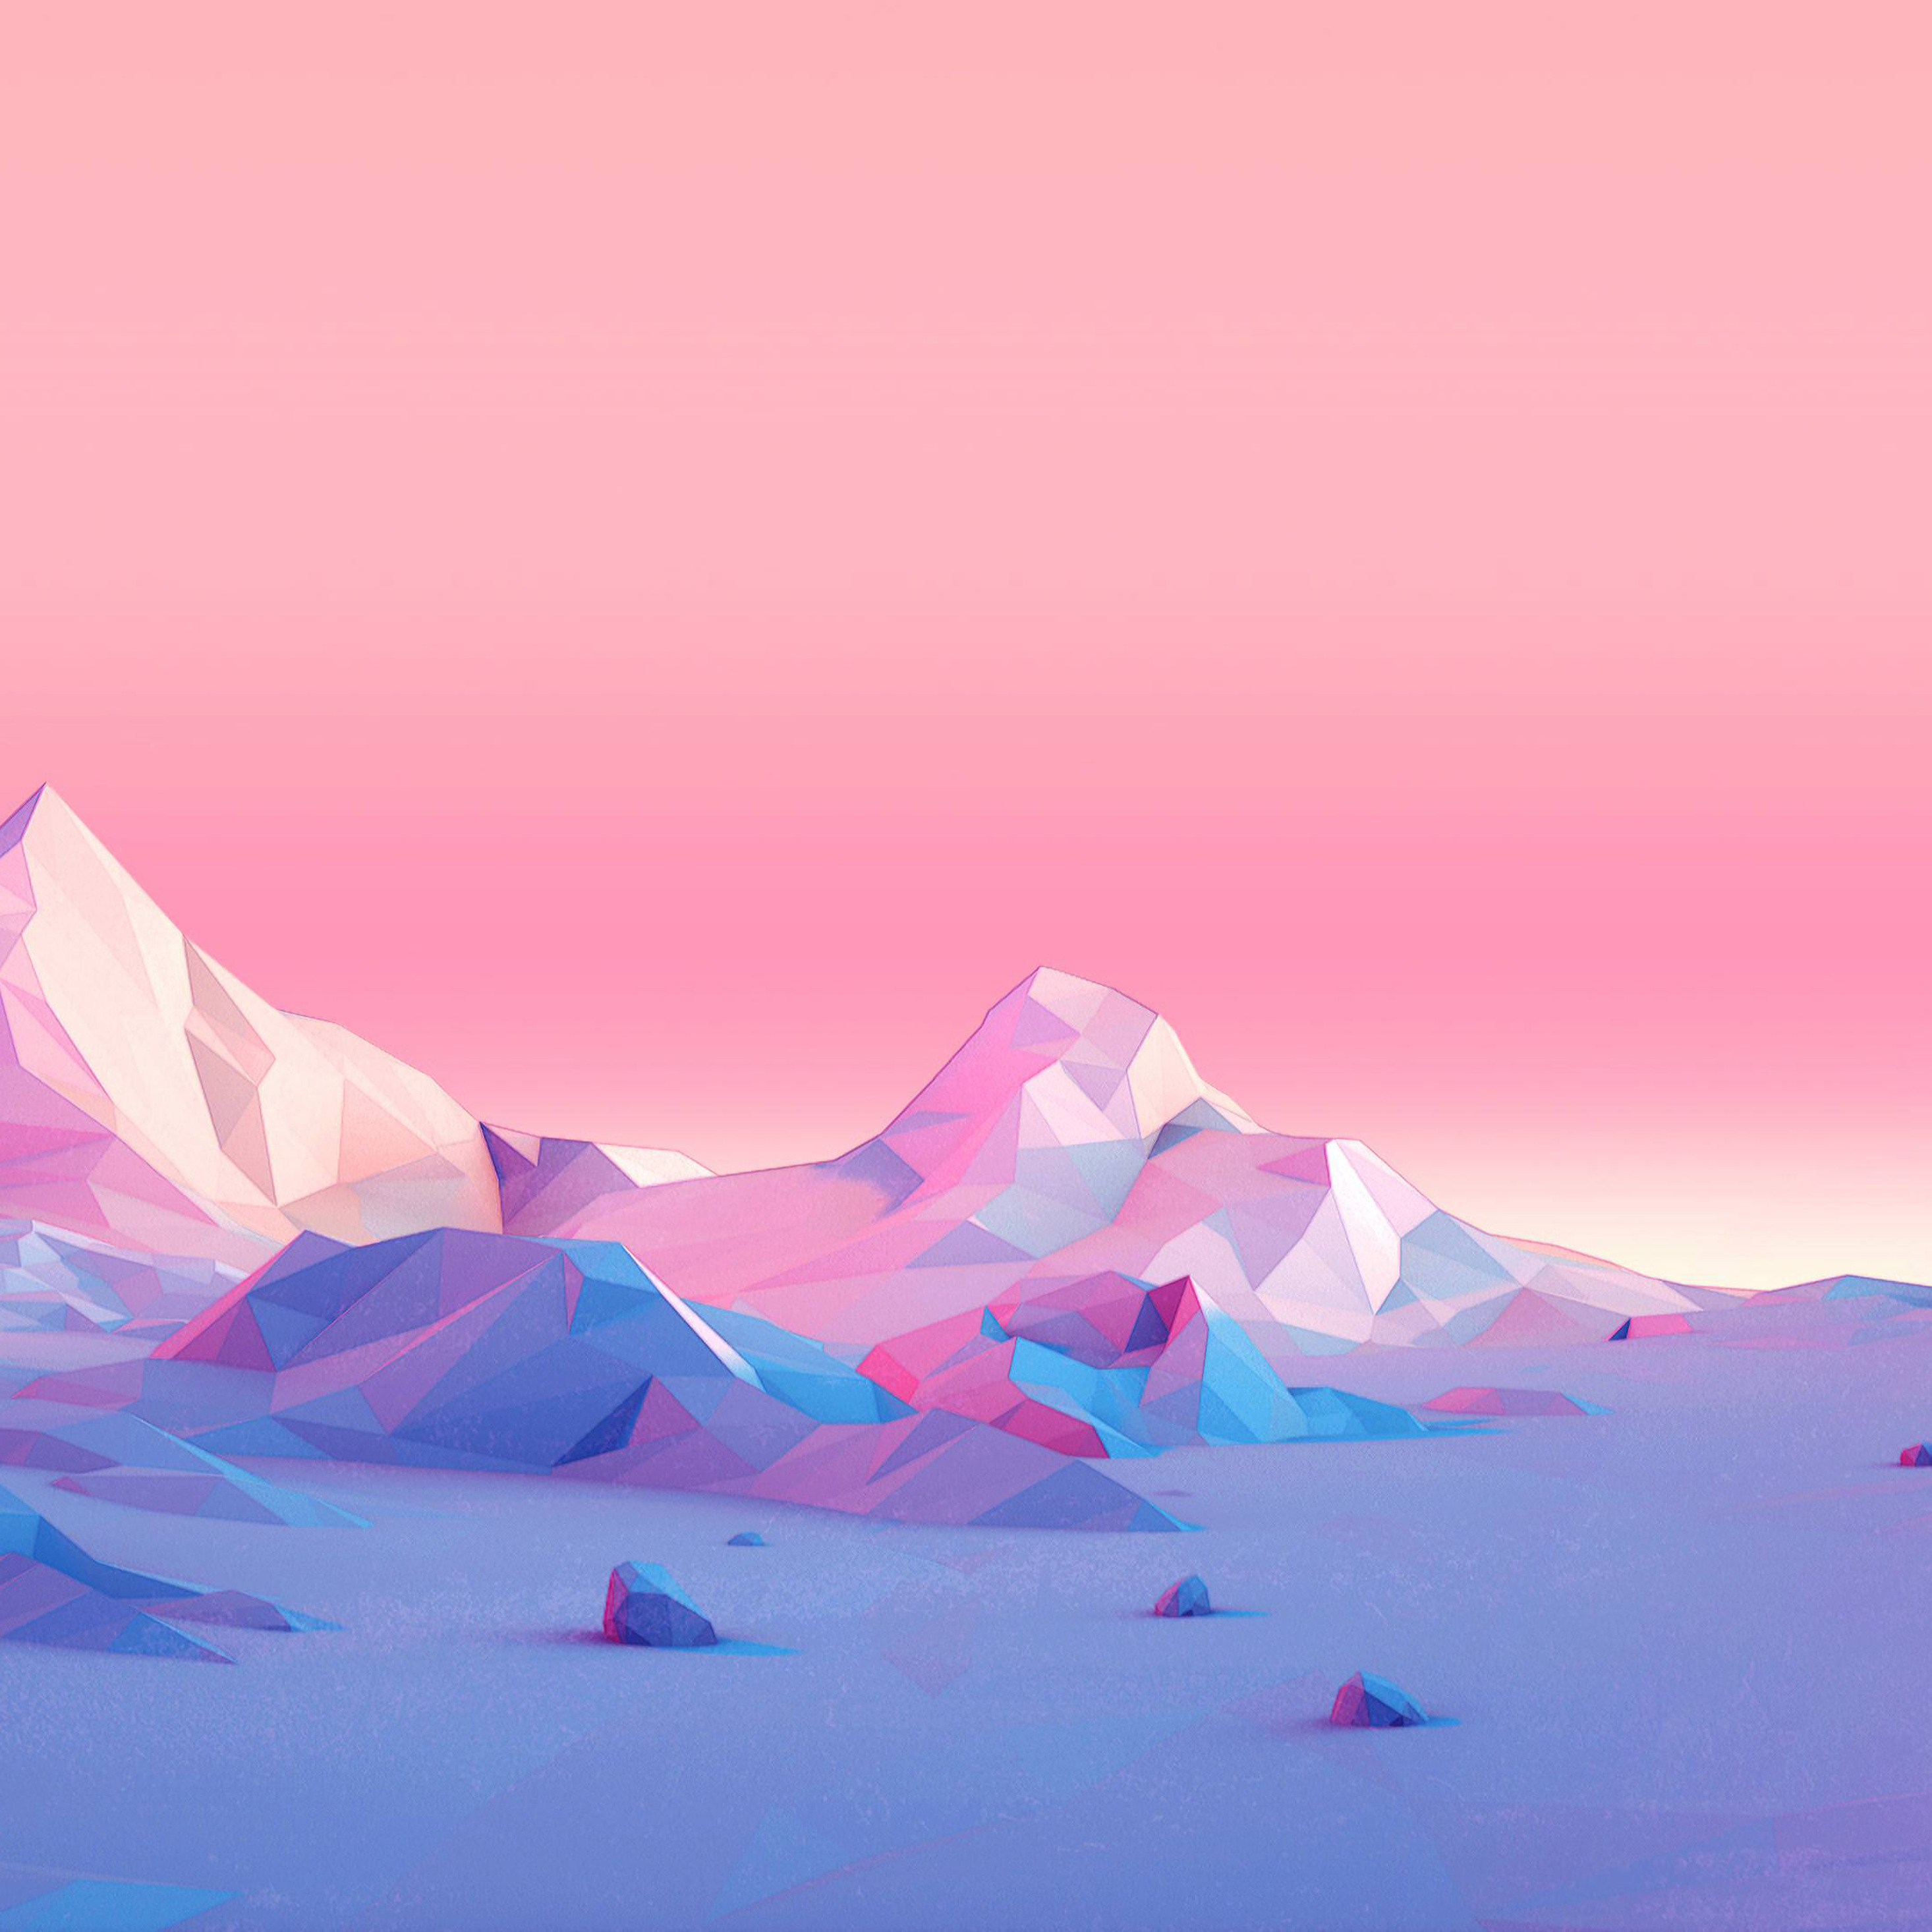 papel pintado minimalista del ipad,cielo,rosado,hielo,iceberg,glaciar